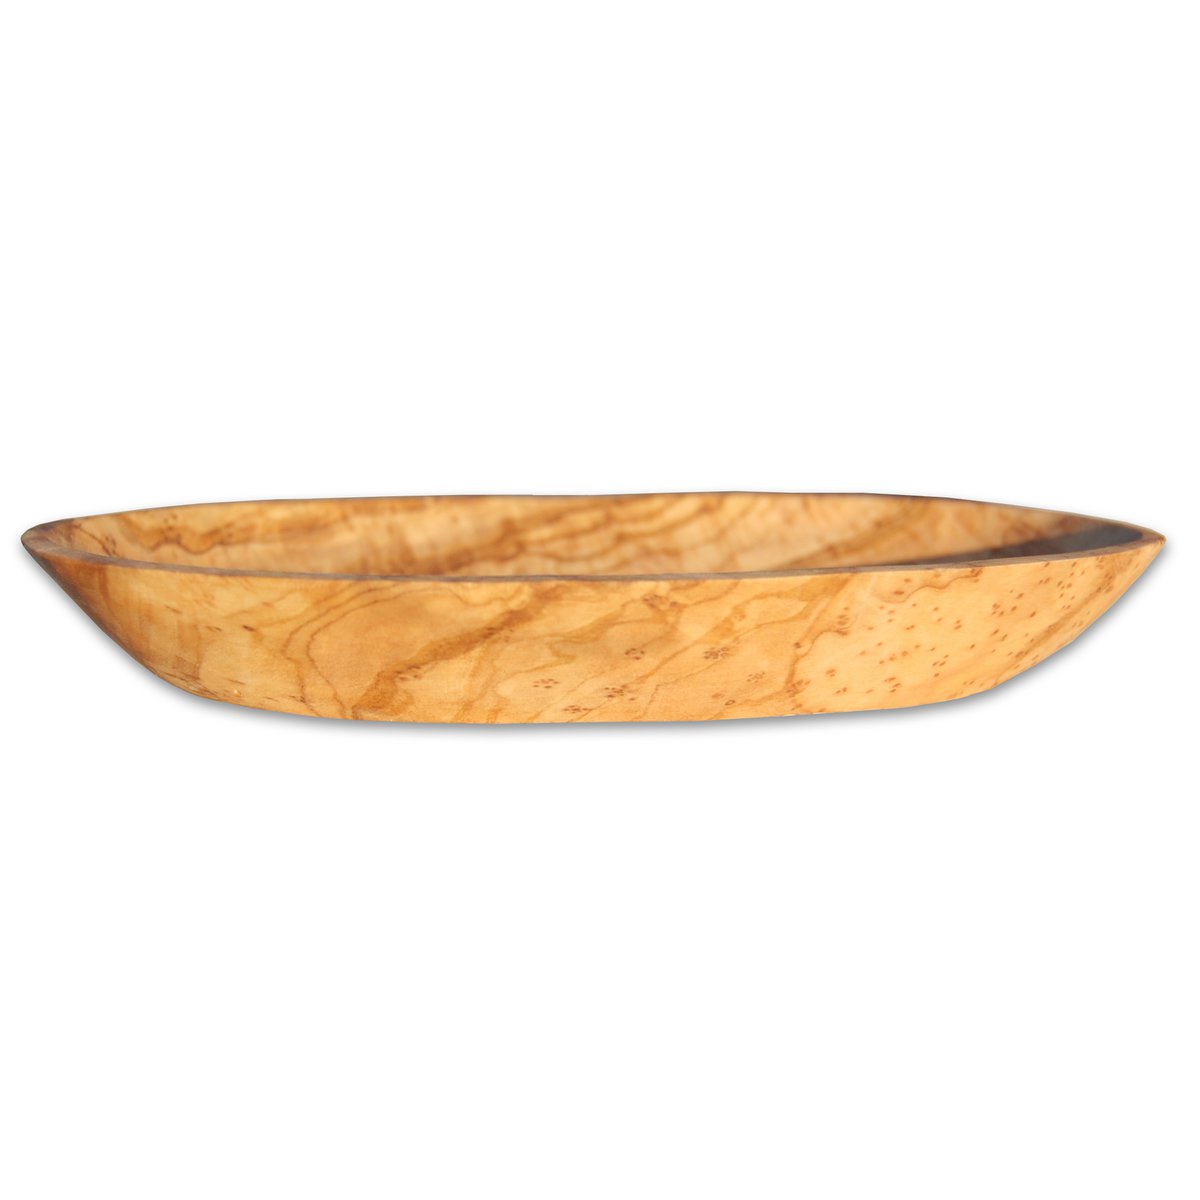 Seifenschale oval ca. 12 – 14 cm aus Olivenholz